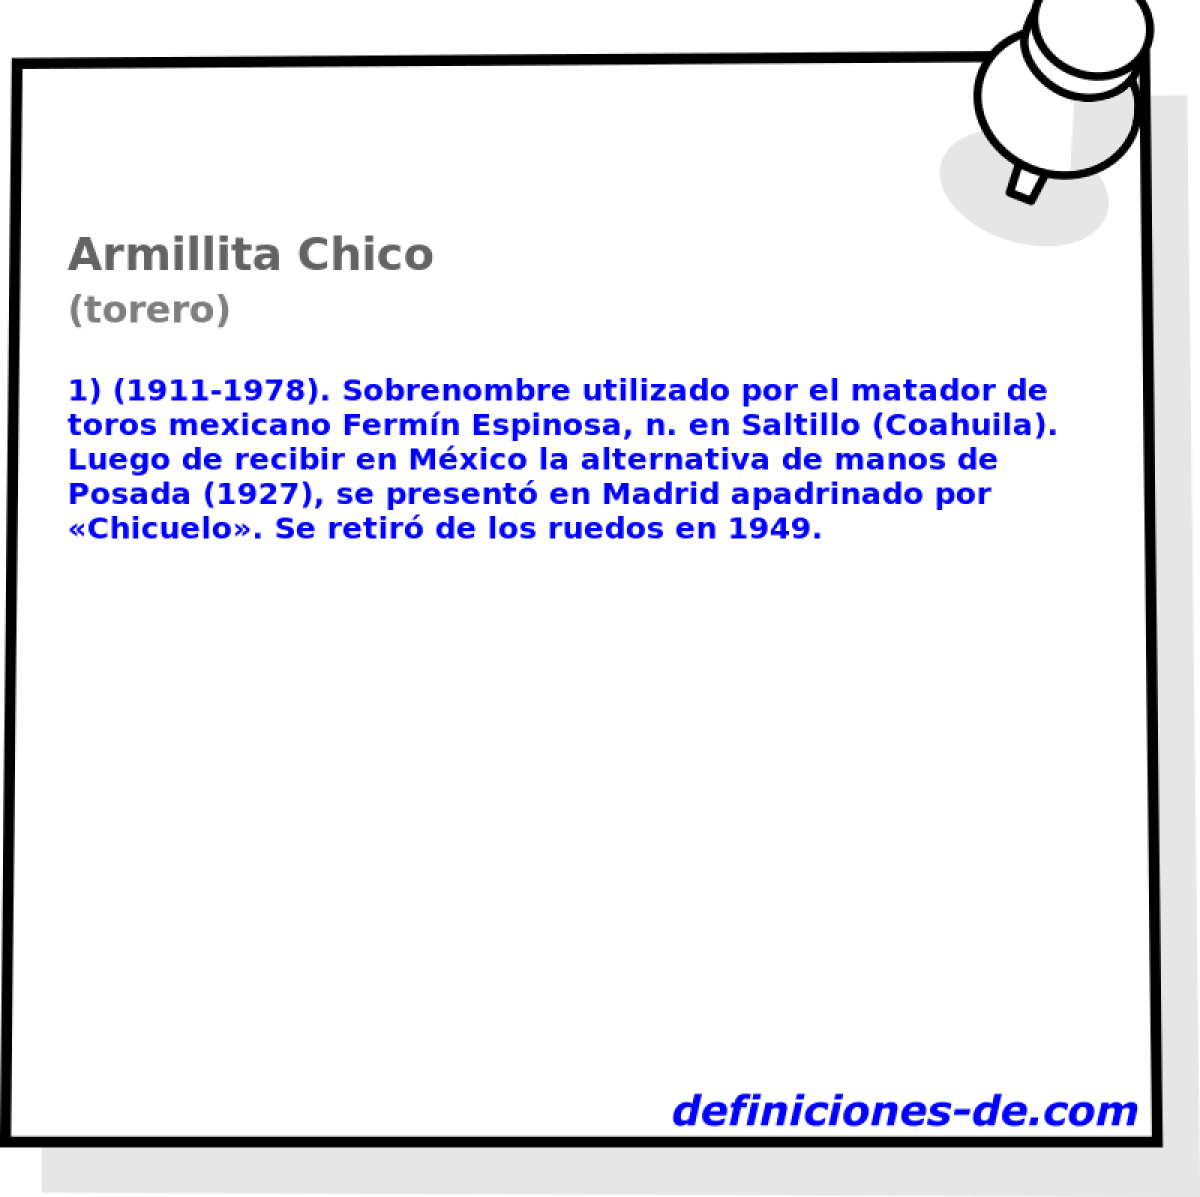 Armillita Chico (torero)